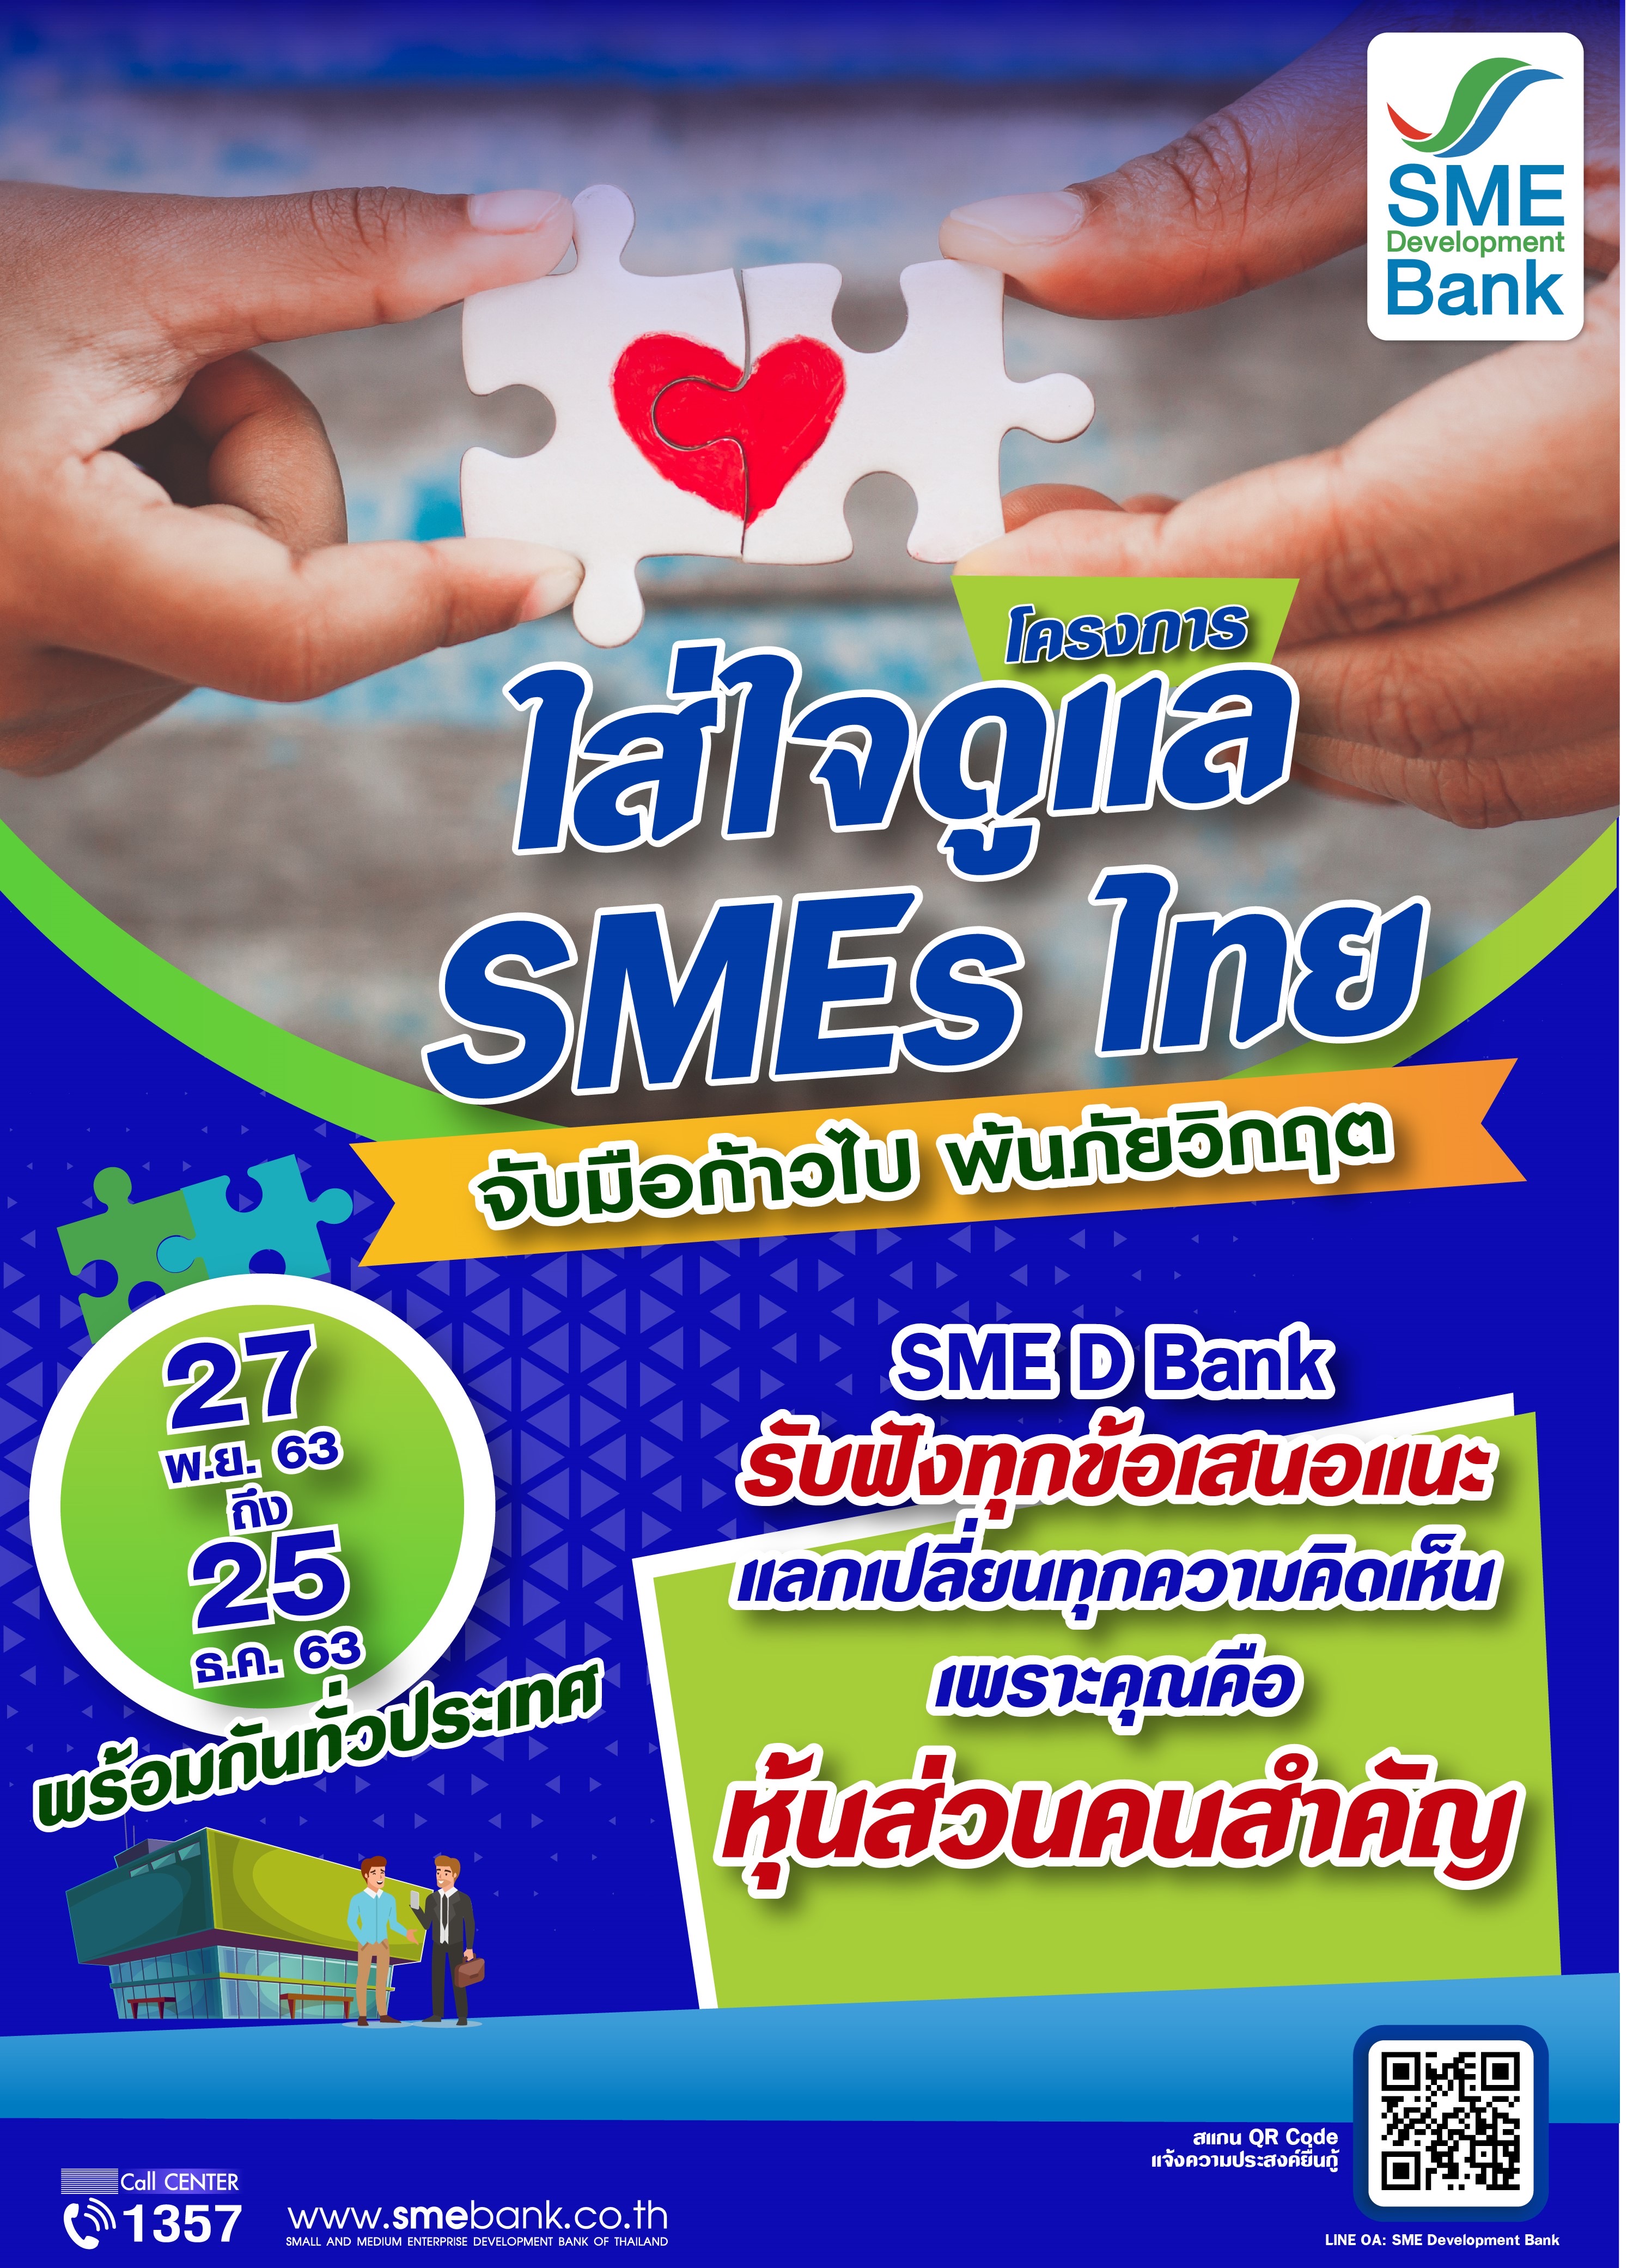 SME D Bank ห่วงใยลูกค้า จัดโครงการ “ใส่ใจดูแล SMEsไทย”  ปูพรมช่วยเหลือถึงถิ่นทั่วไทย จับมือก้าวไป พ้นภัยวิกฤต